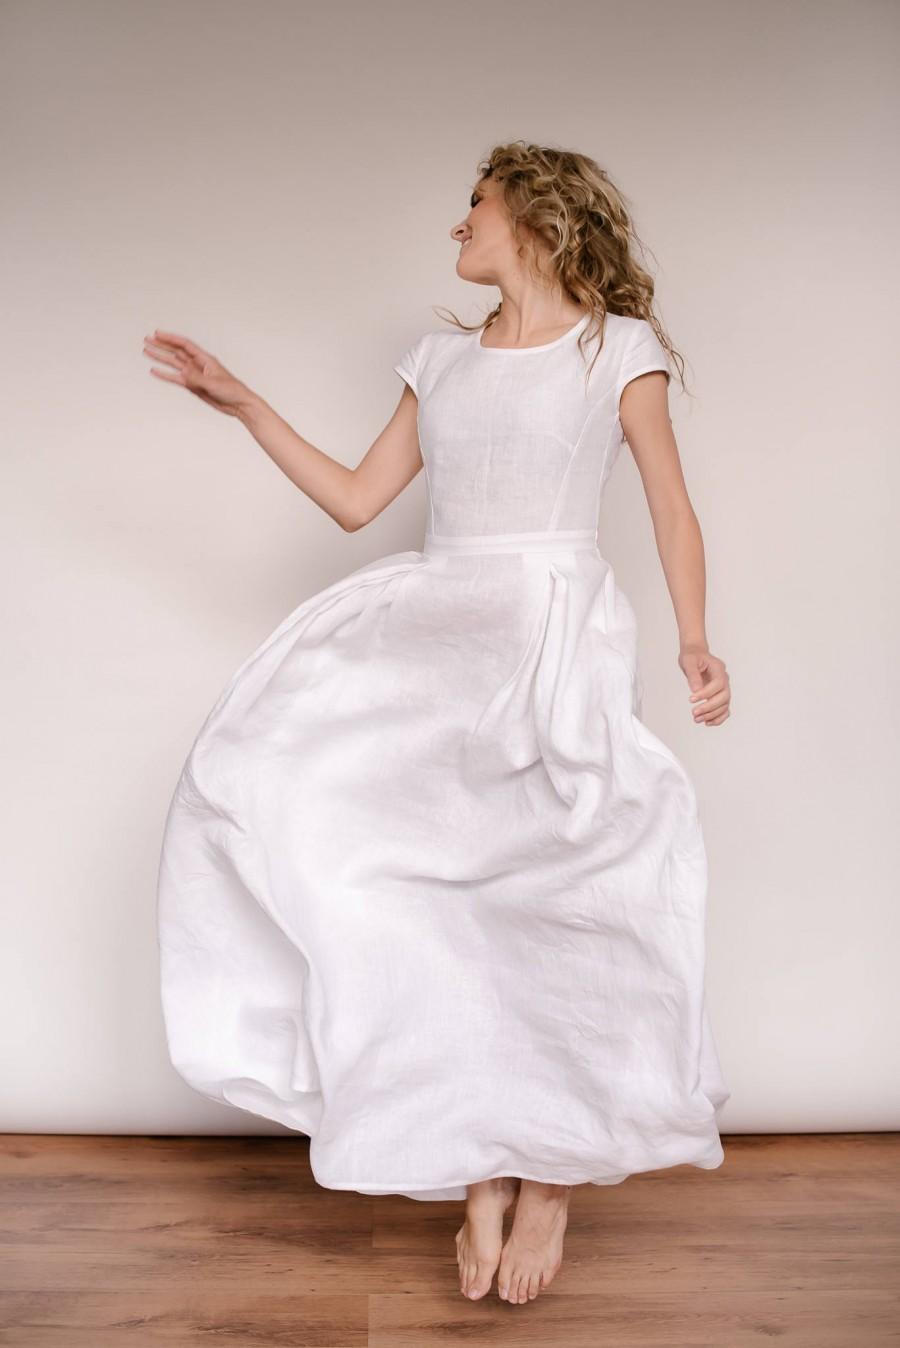 زفاف - Linen Wedding Dress, Simple Wedding Dress, Minimalist Wedding Dress, Linen Clothing, Modest Wedding Dress, Casual Wedding Dress, White Linen